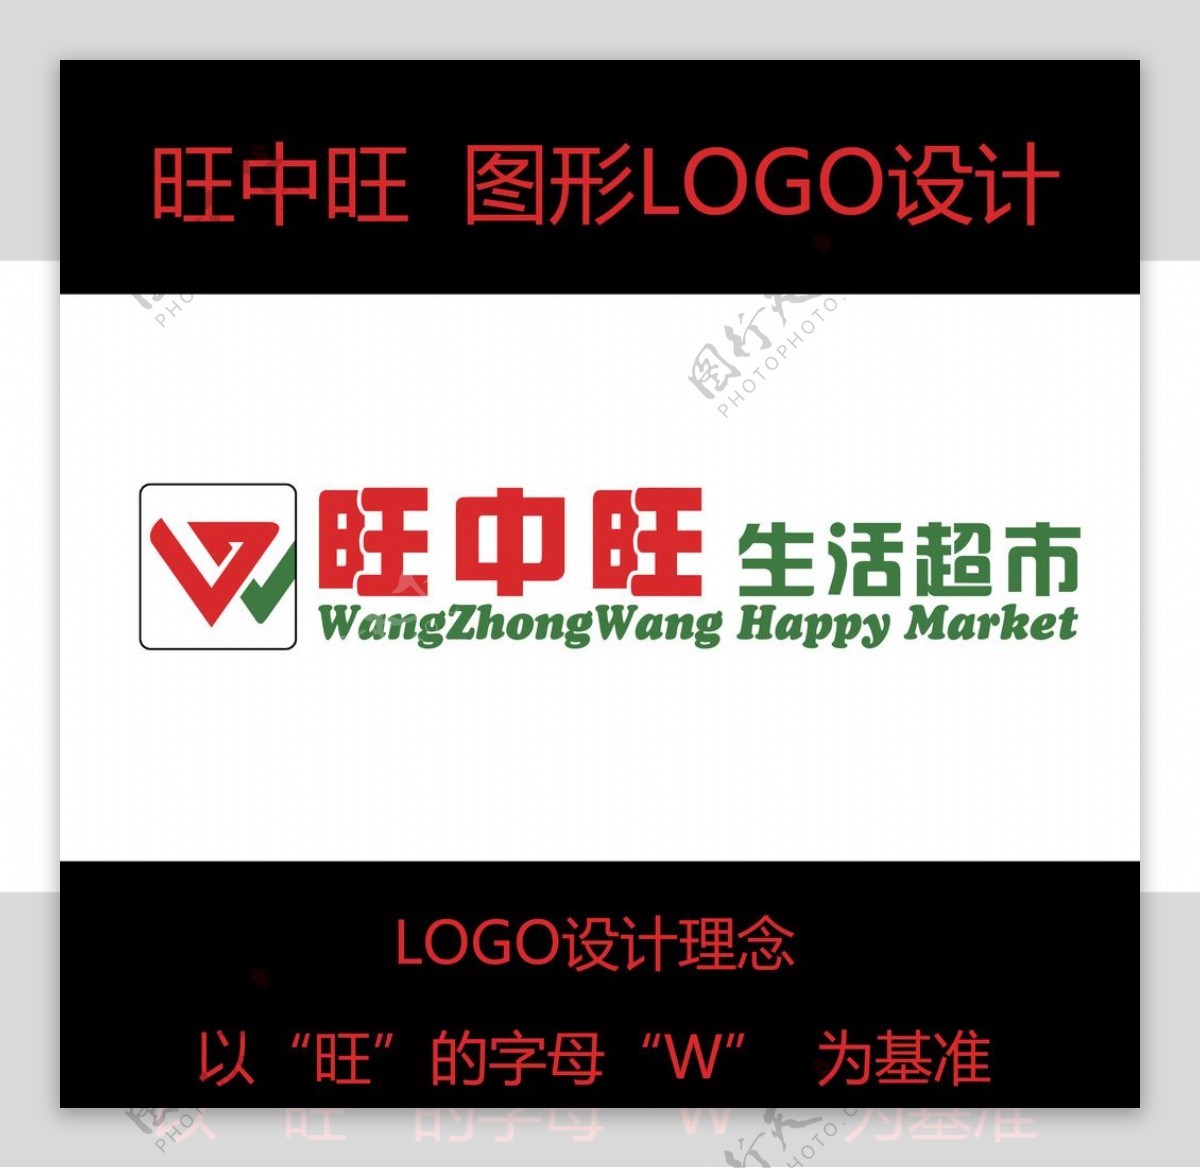 旺中旺超市logo设计